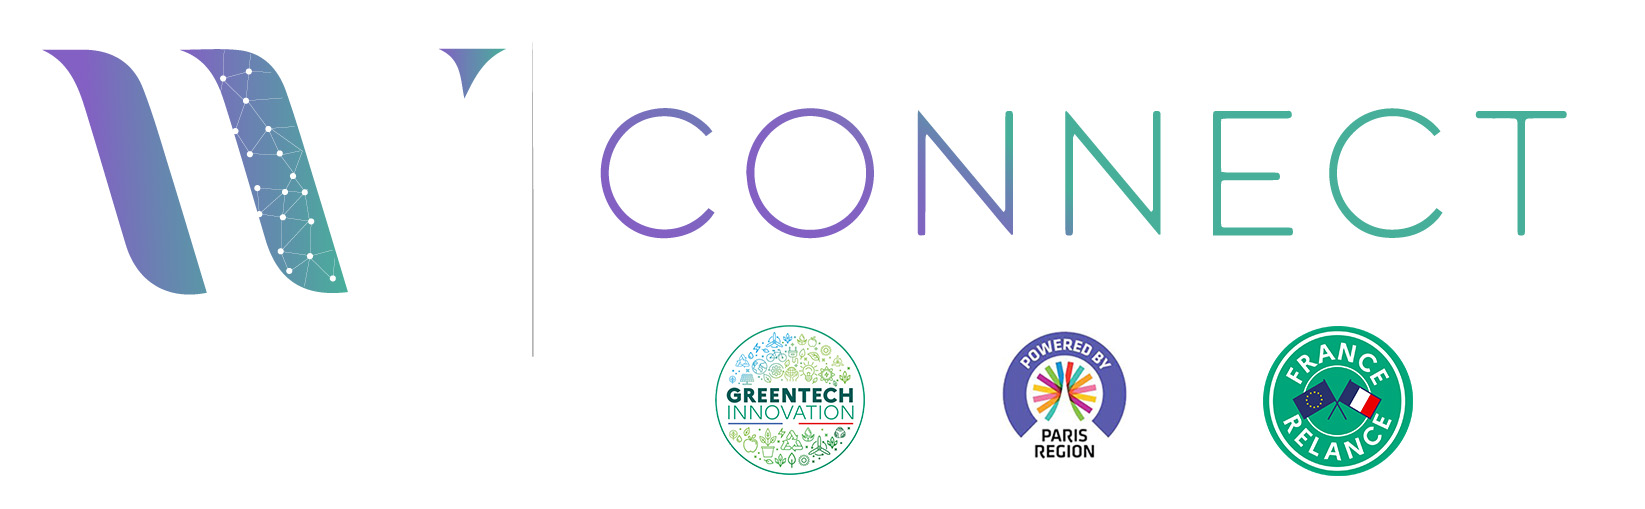 WE CONNECT - Lauréat Greentech